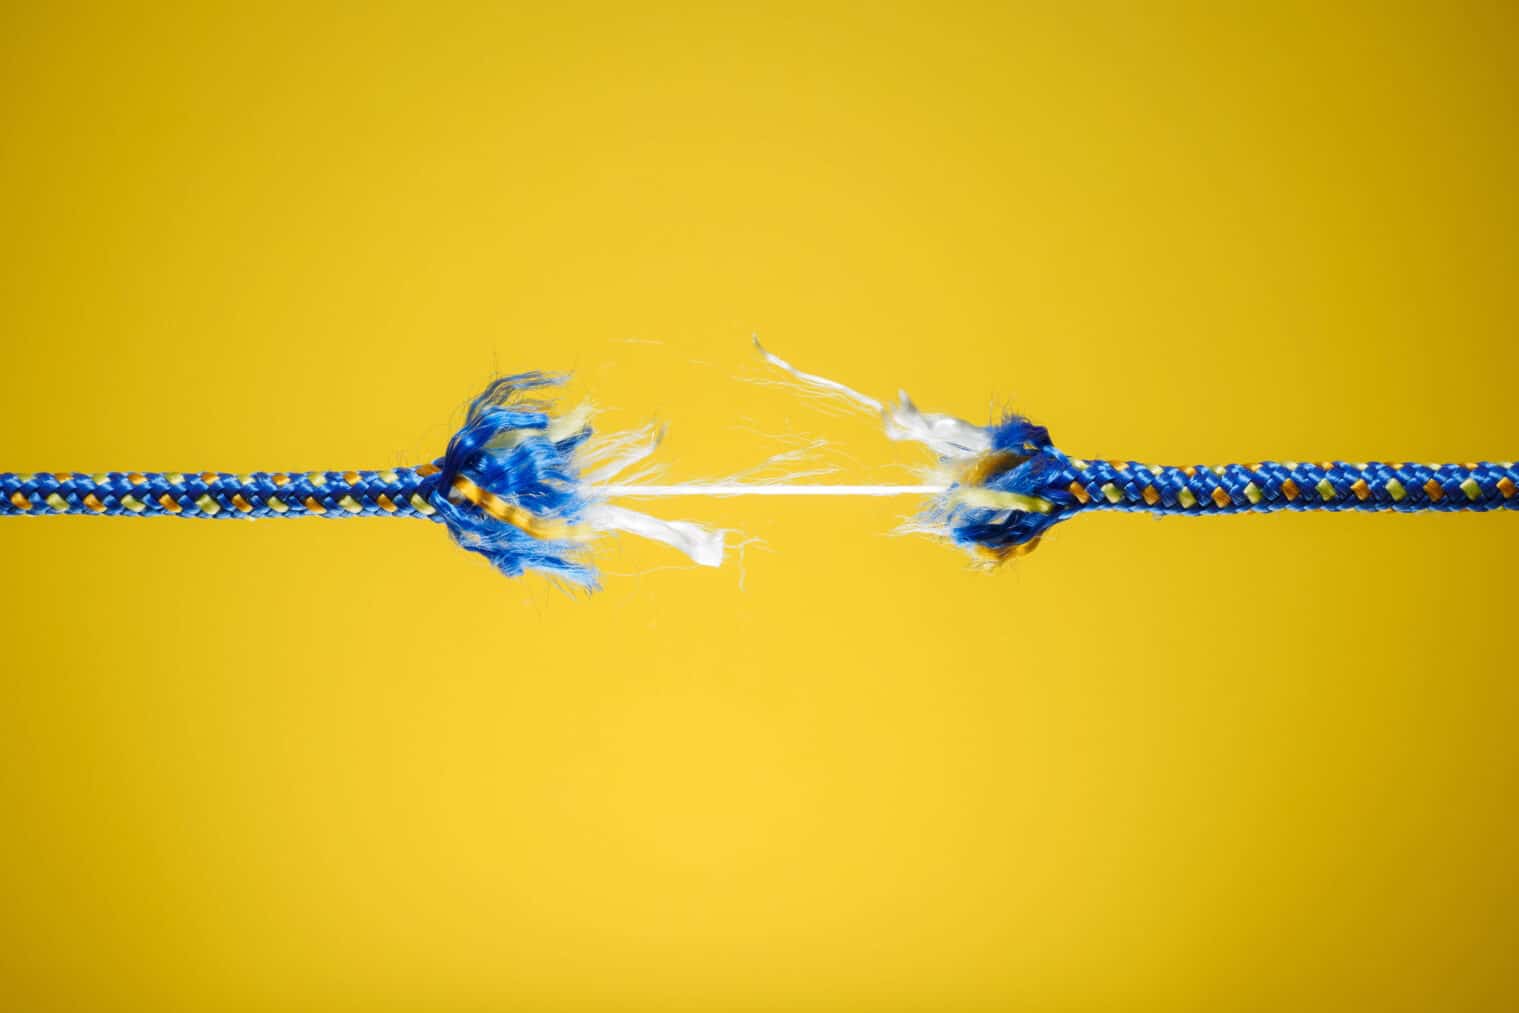 La corde raide - concept de tension, de stress et de risque